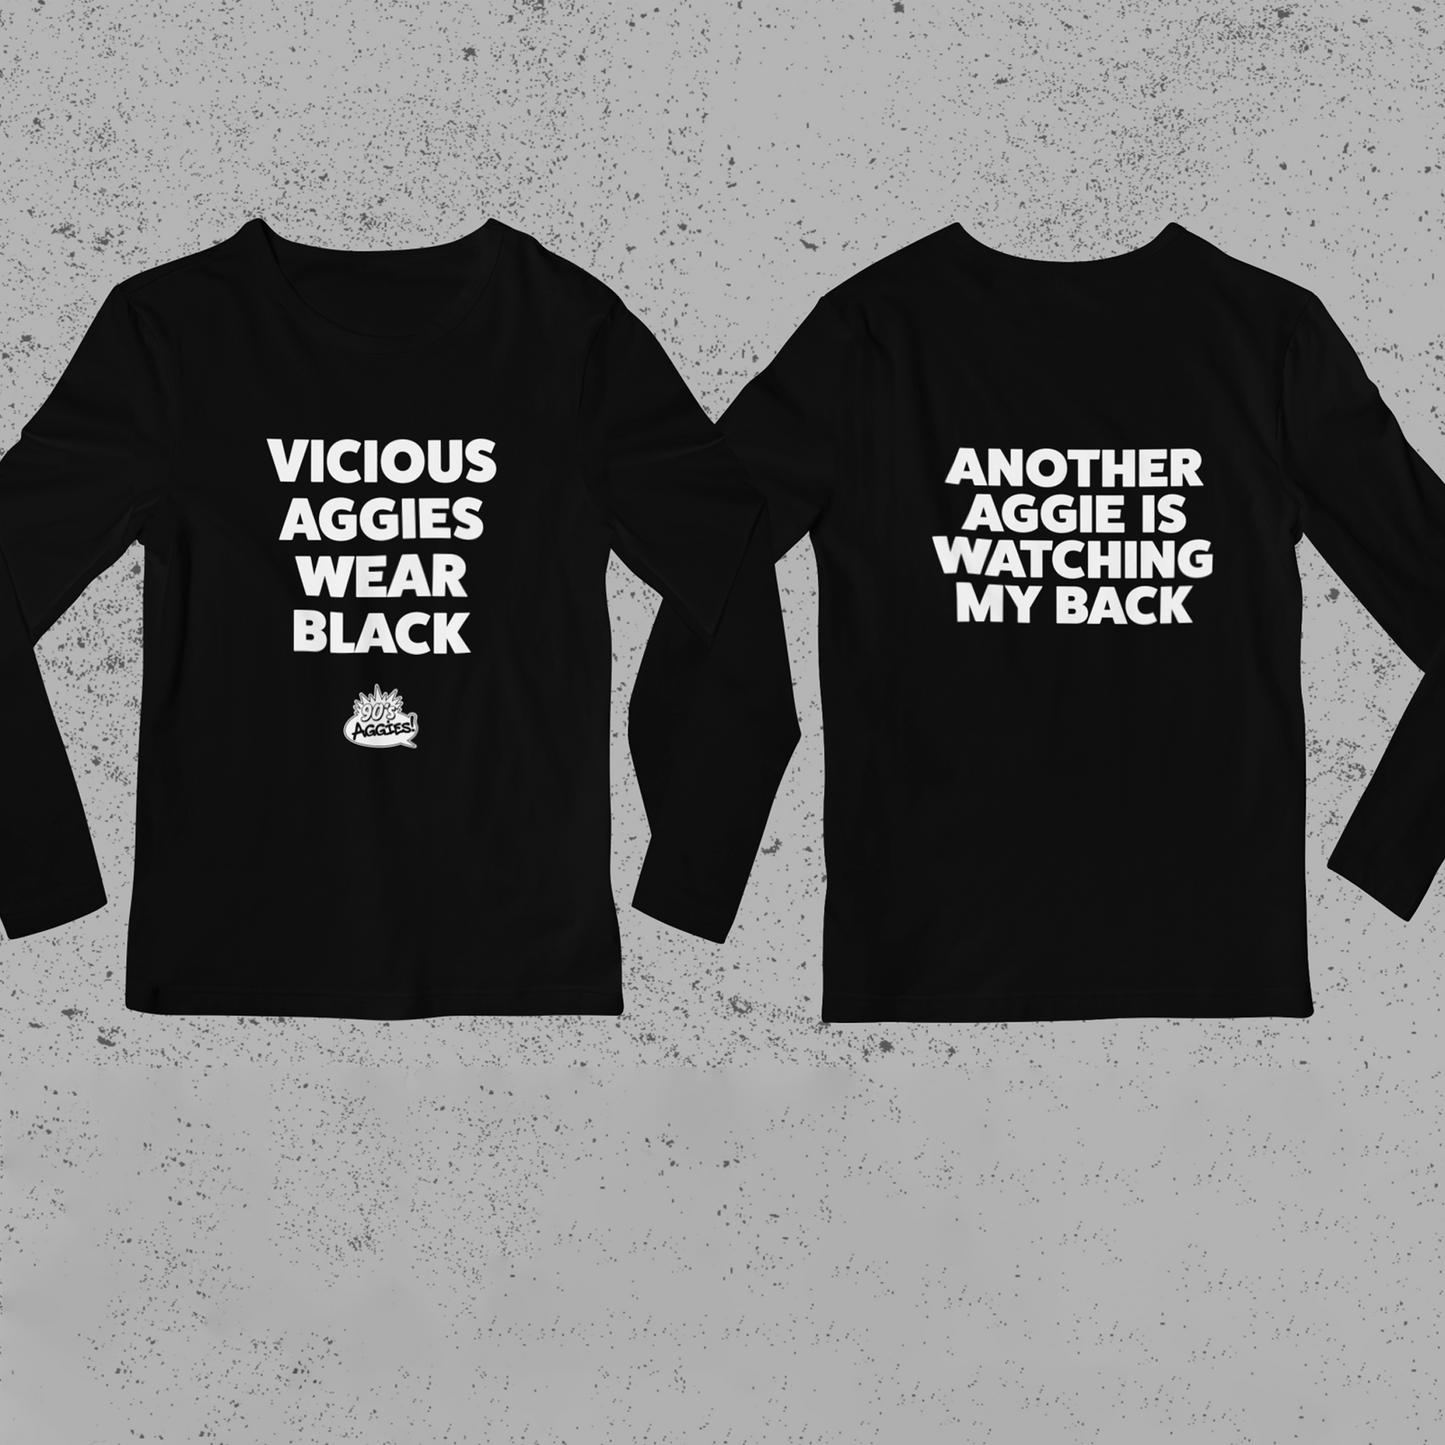 Vicious Aggies Wear Black tee